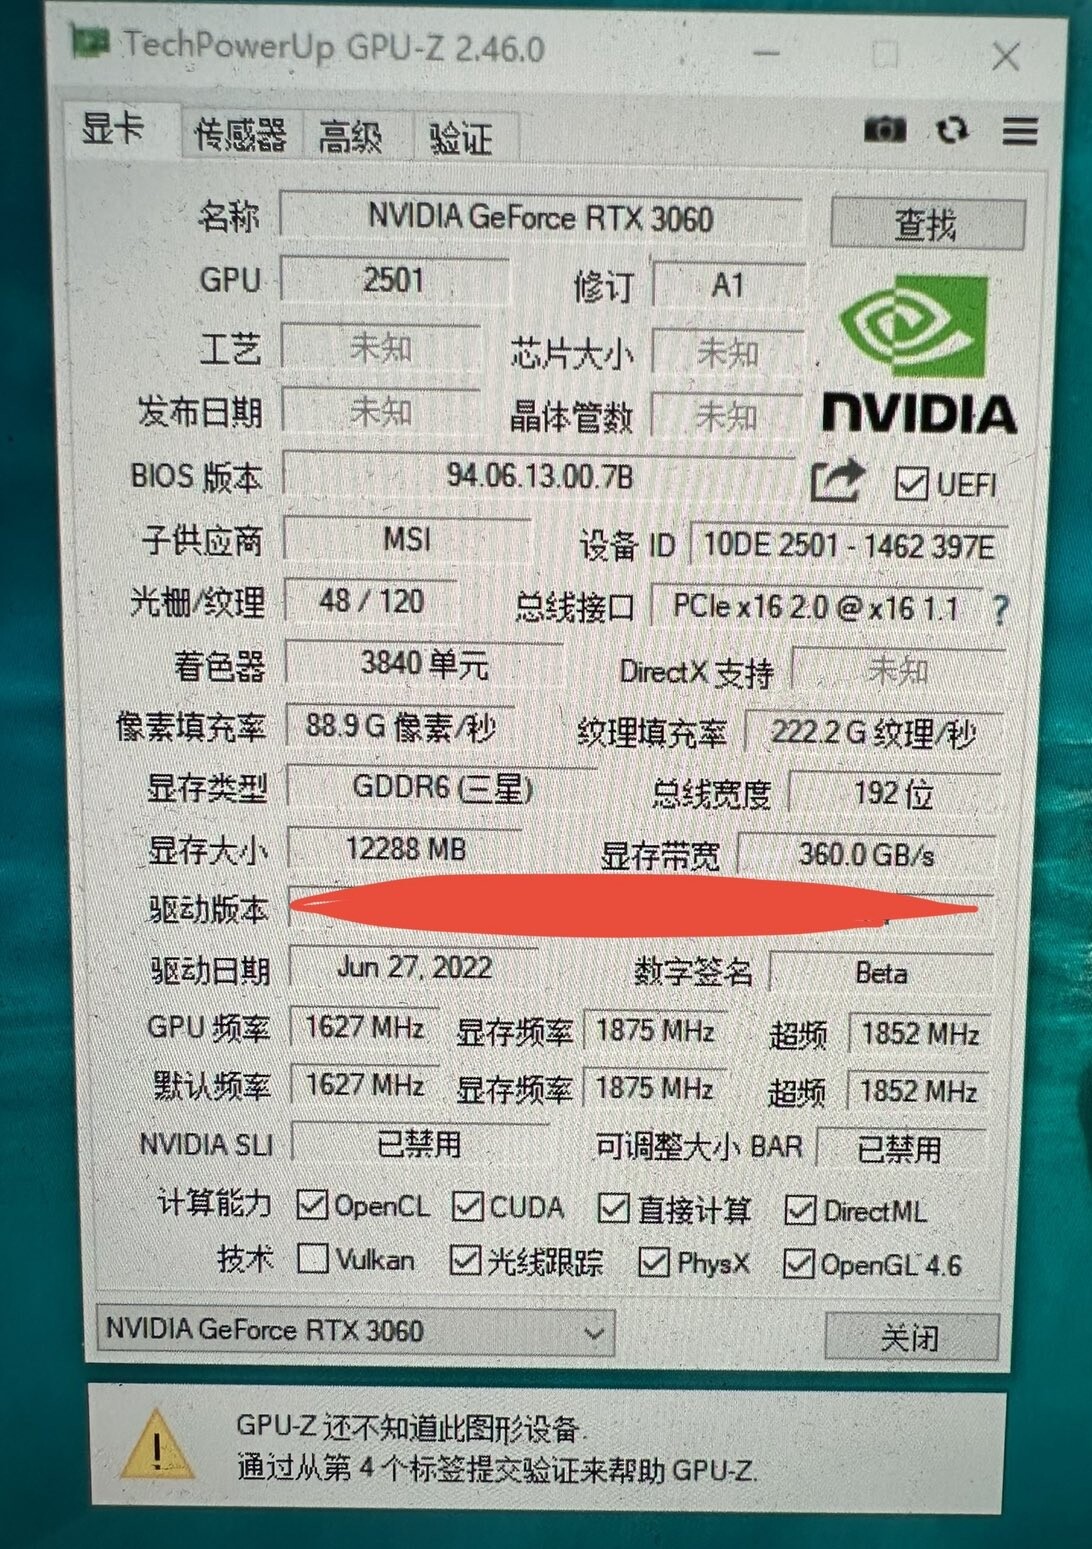 GeForce RTX 3060 Super